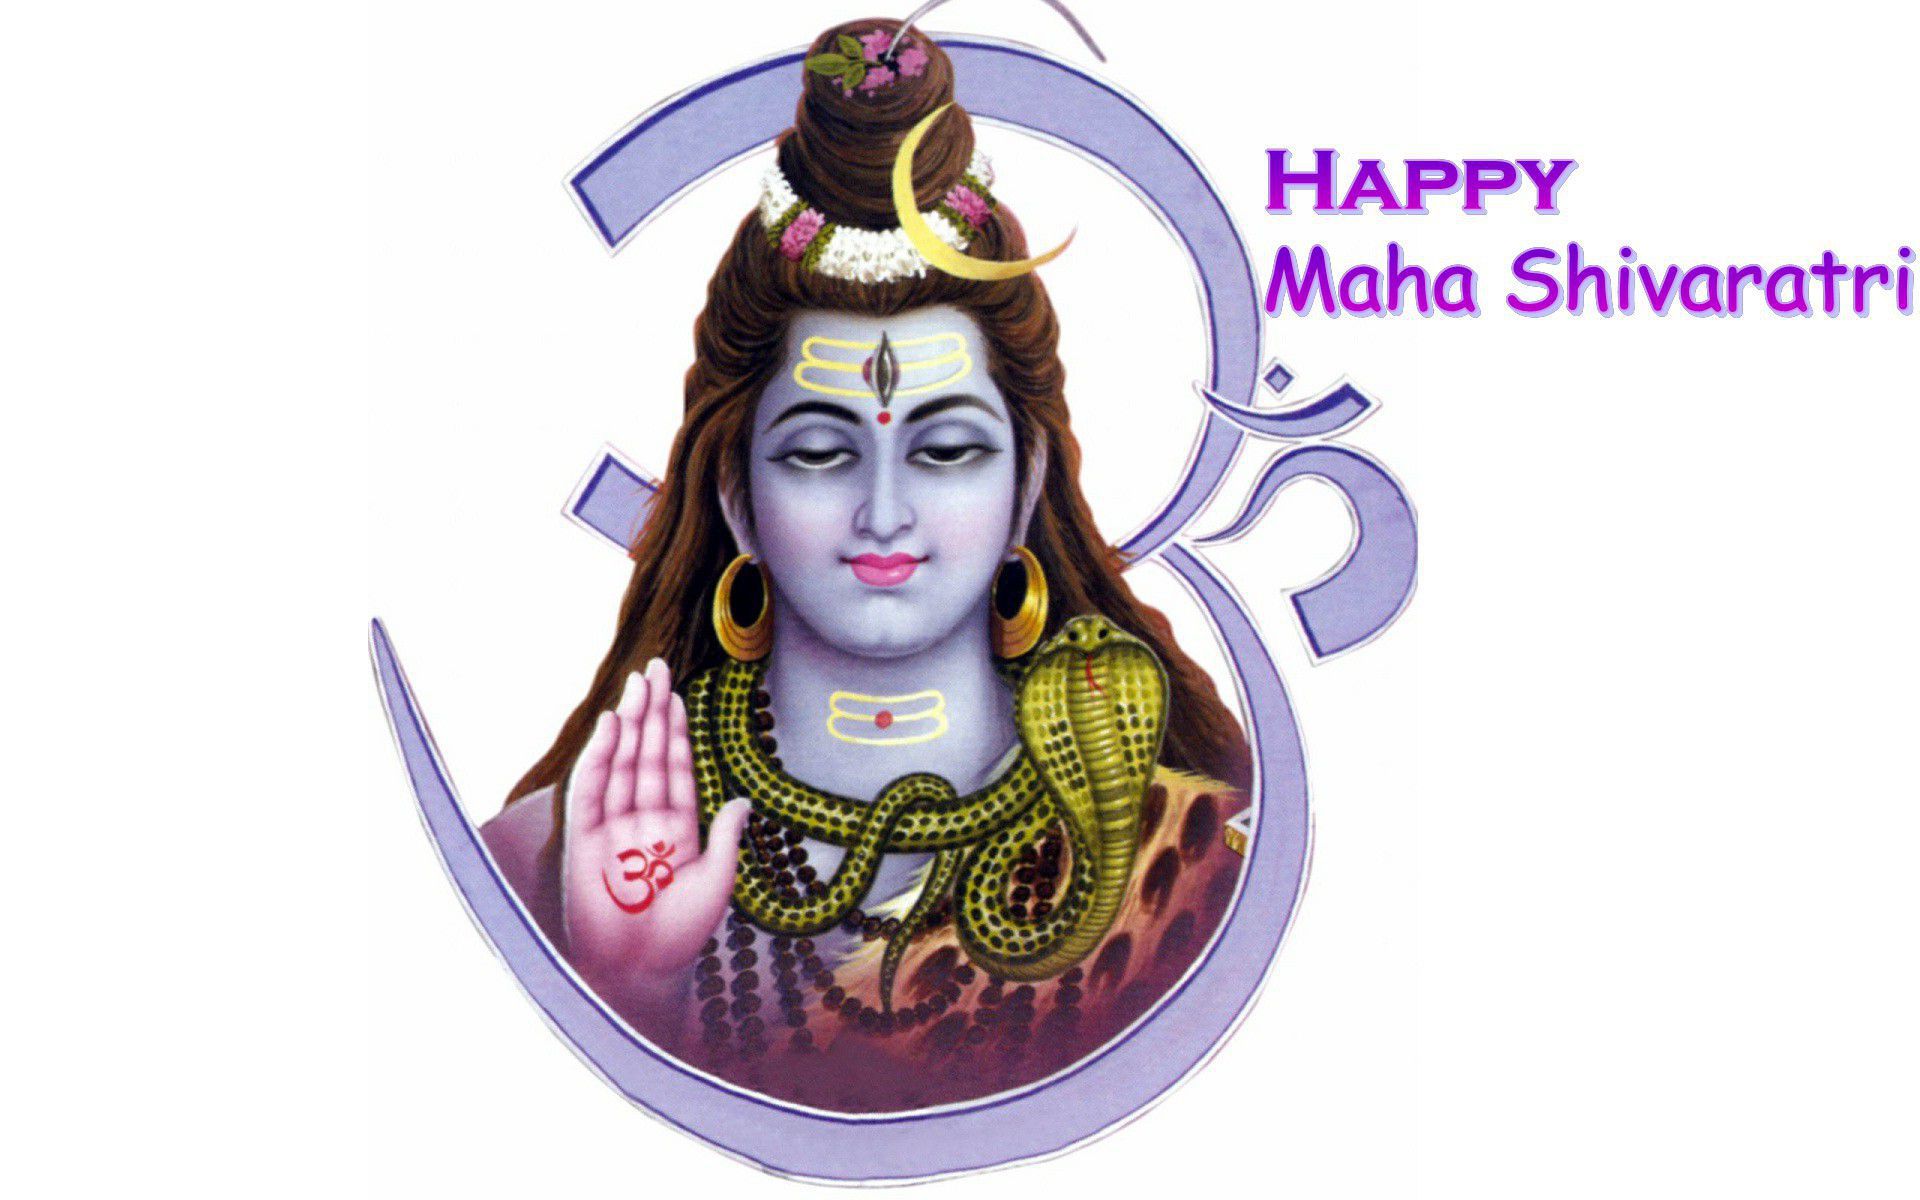 Happy Maha Shivaratri 2019 , HD Wallpaper & Backgrounds